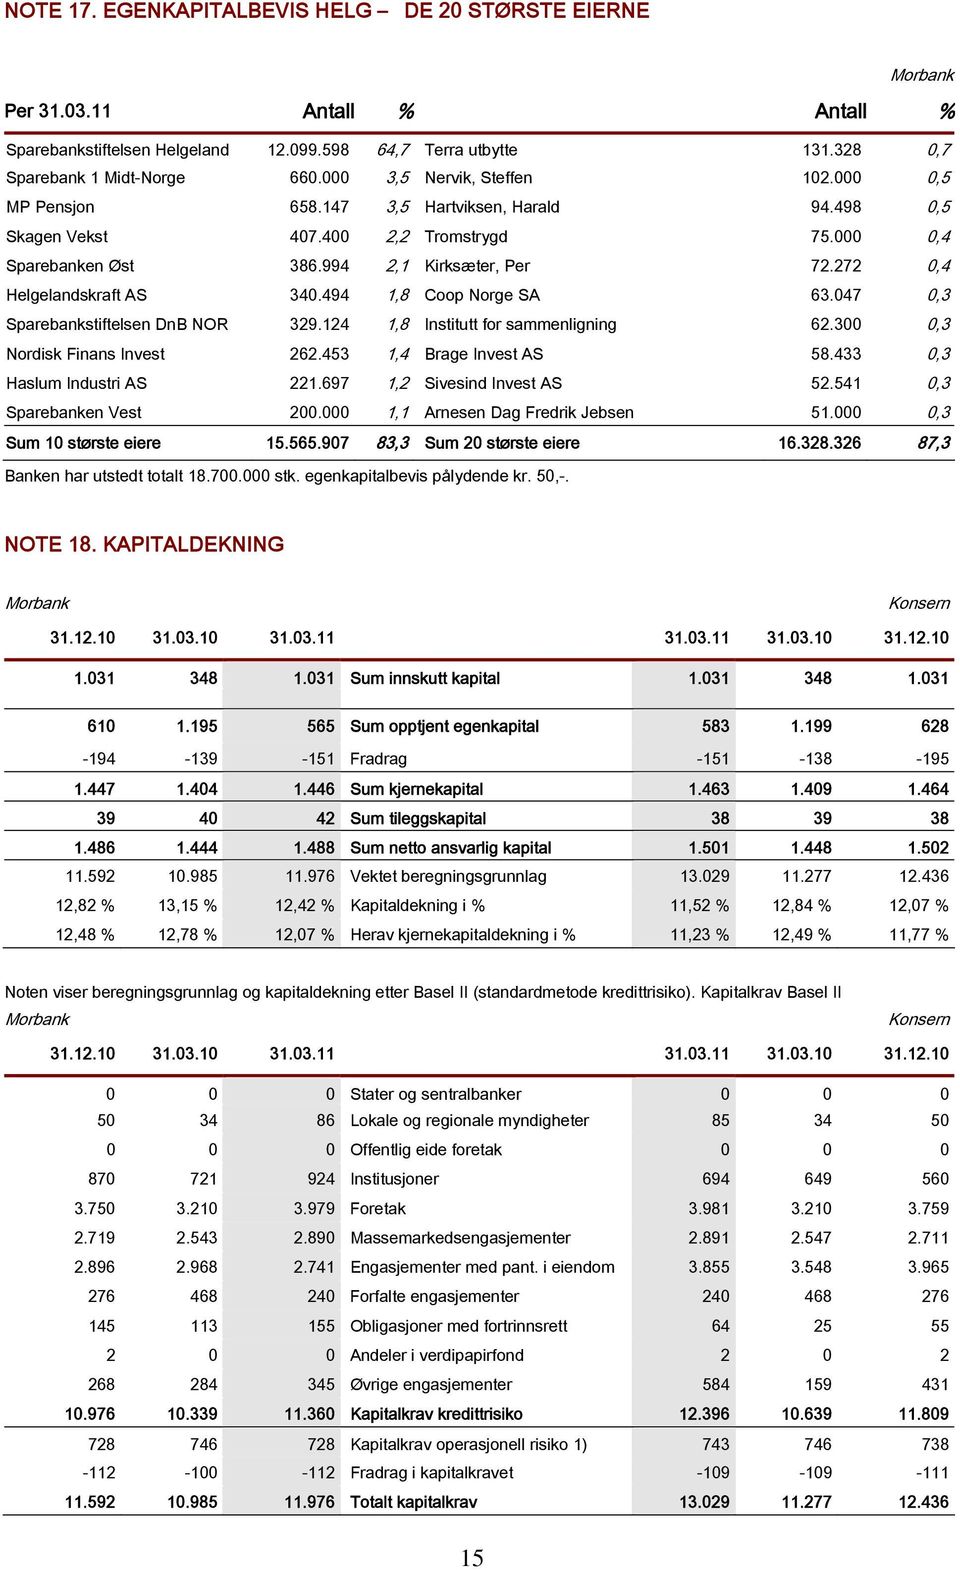 272 0,4 Helgelandskraft AS 340.494 1,8 Coop Norge SA 63.047 0,3 Sparebankstiftelsen DnB NOR 329.124 1,8 Institutt for sammenligning 62.300 0,3 Nordisk Finans Invest 262.453 1,4 Brage Invest AS 58.